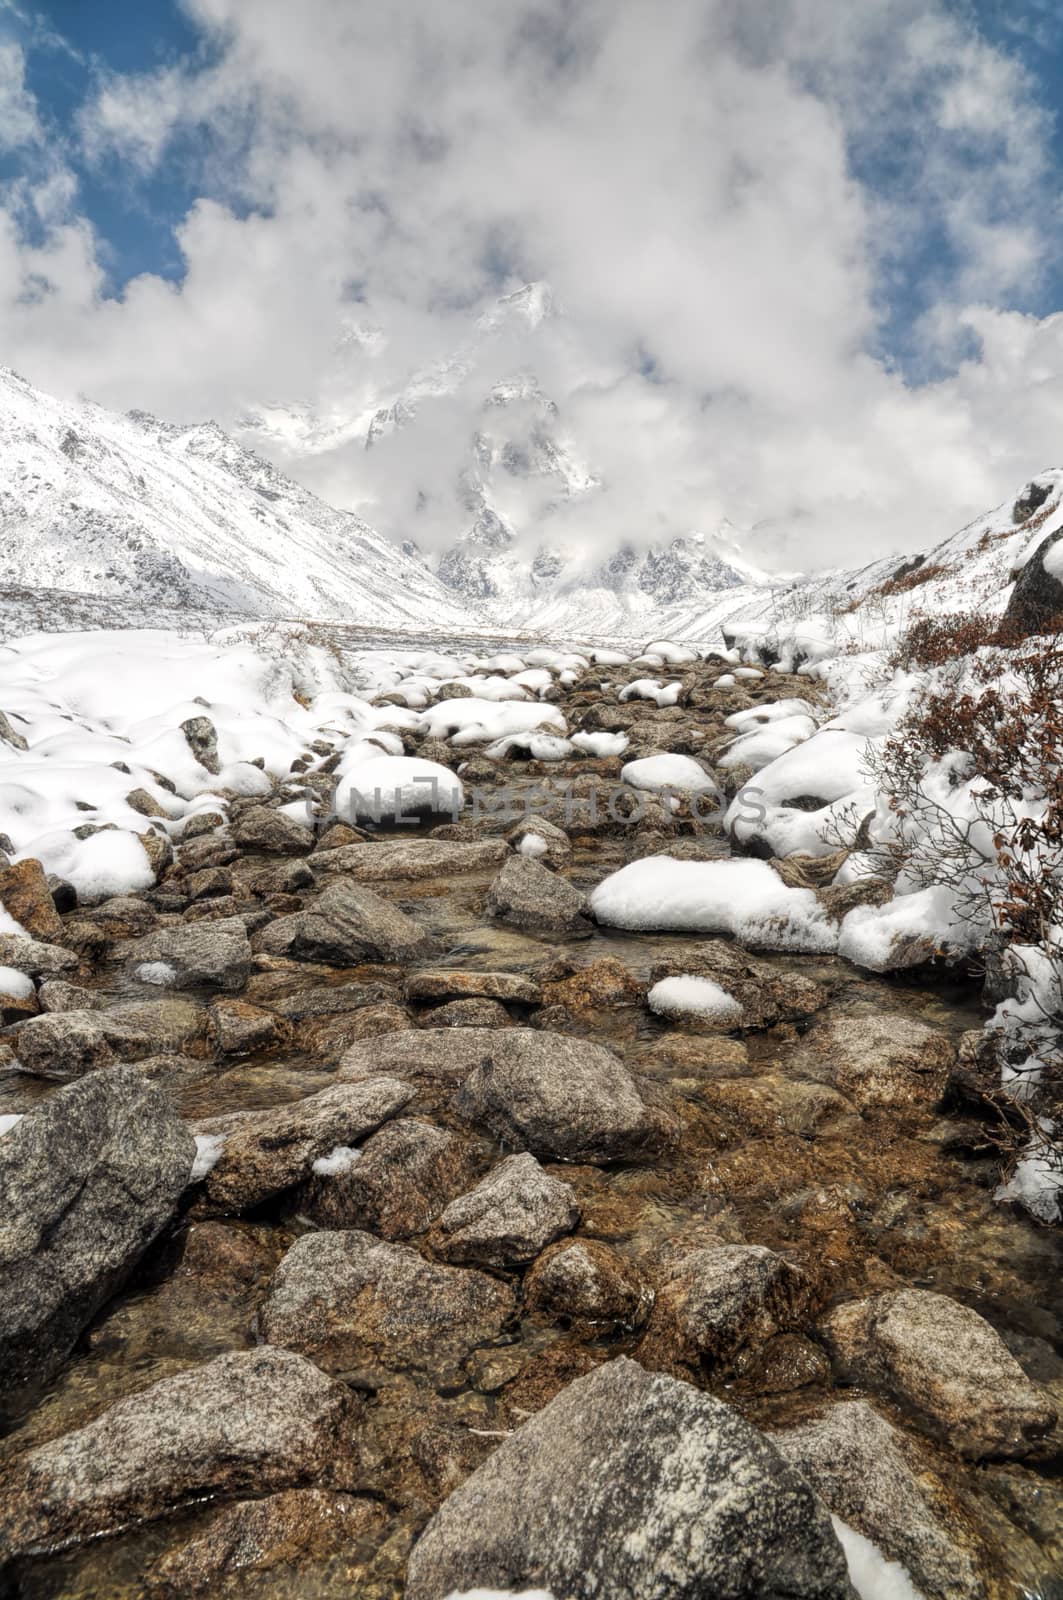 Himalayas near Kanchenjunga by MichalKnitl